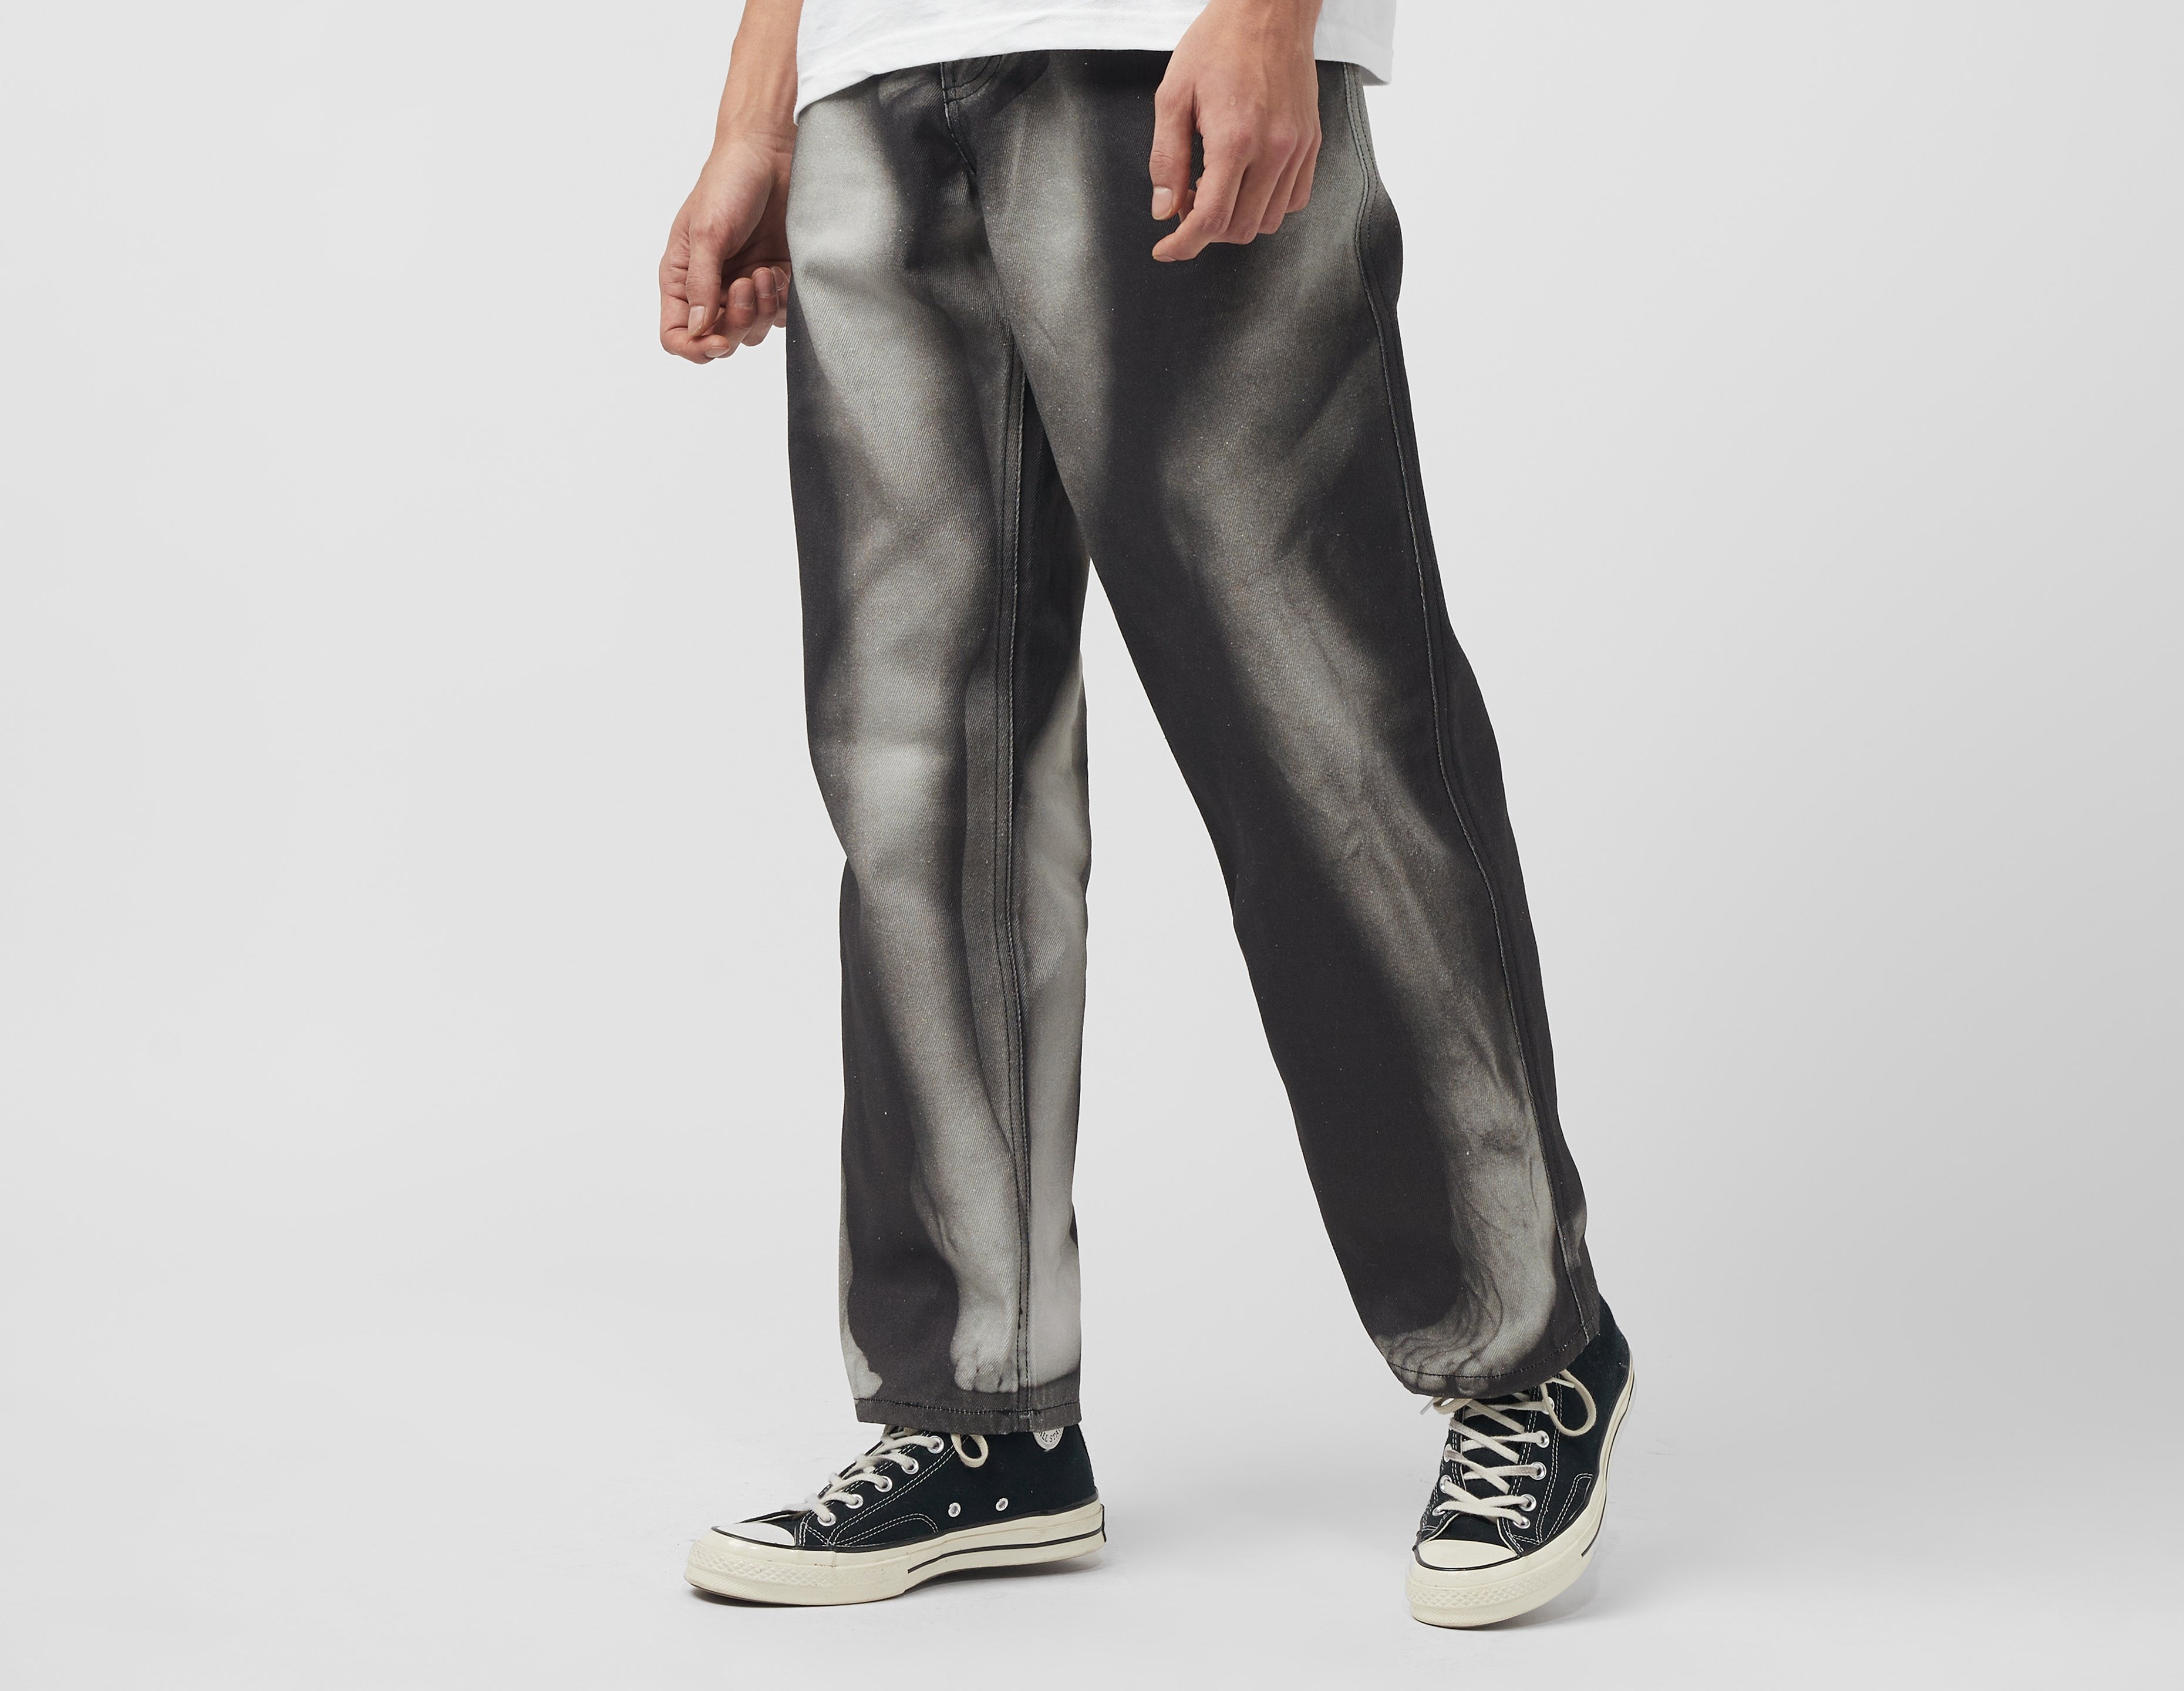 Healthdesign?, Detroit Cut Grey waxed slim fit jeans Detroit cut